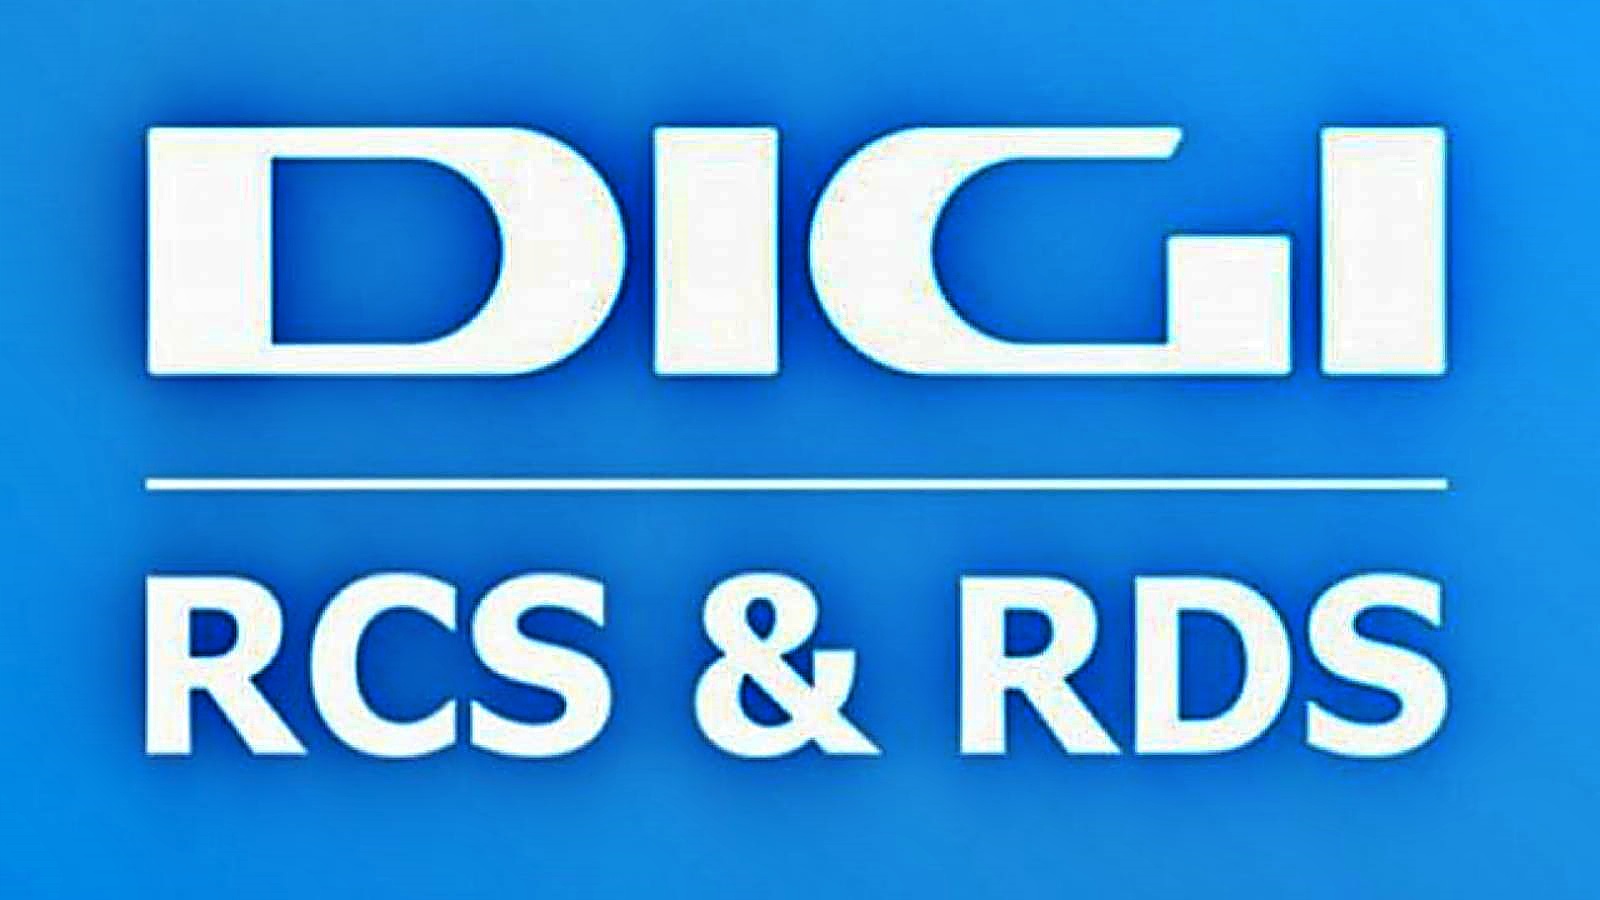 DIGI RCS & RDS mesurent des MILLIONS de clients dans toute la Roumanie